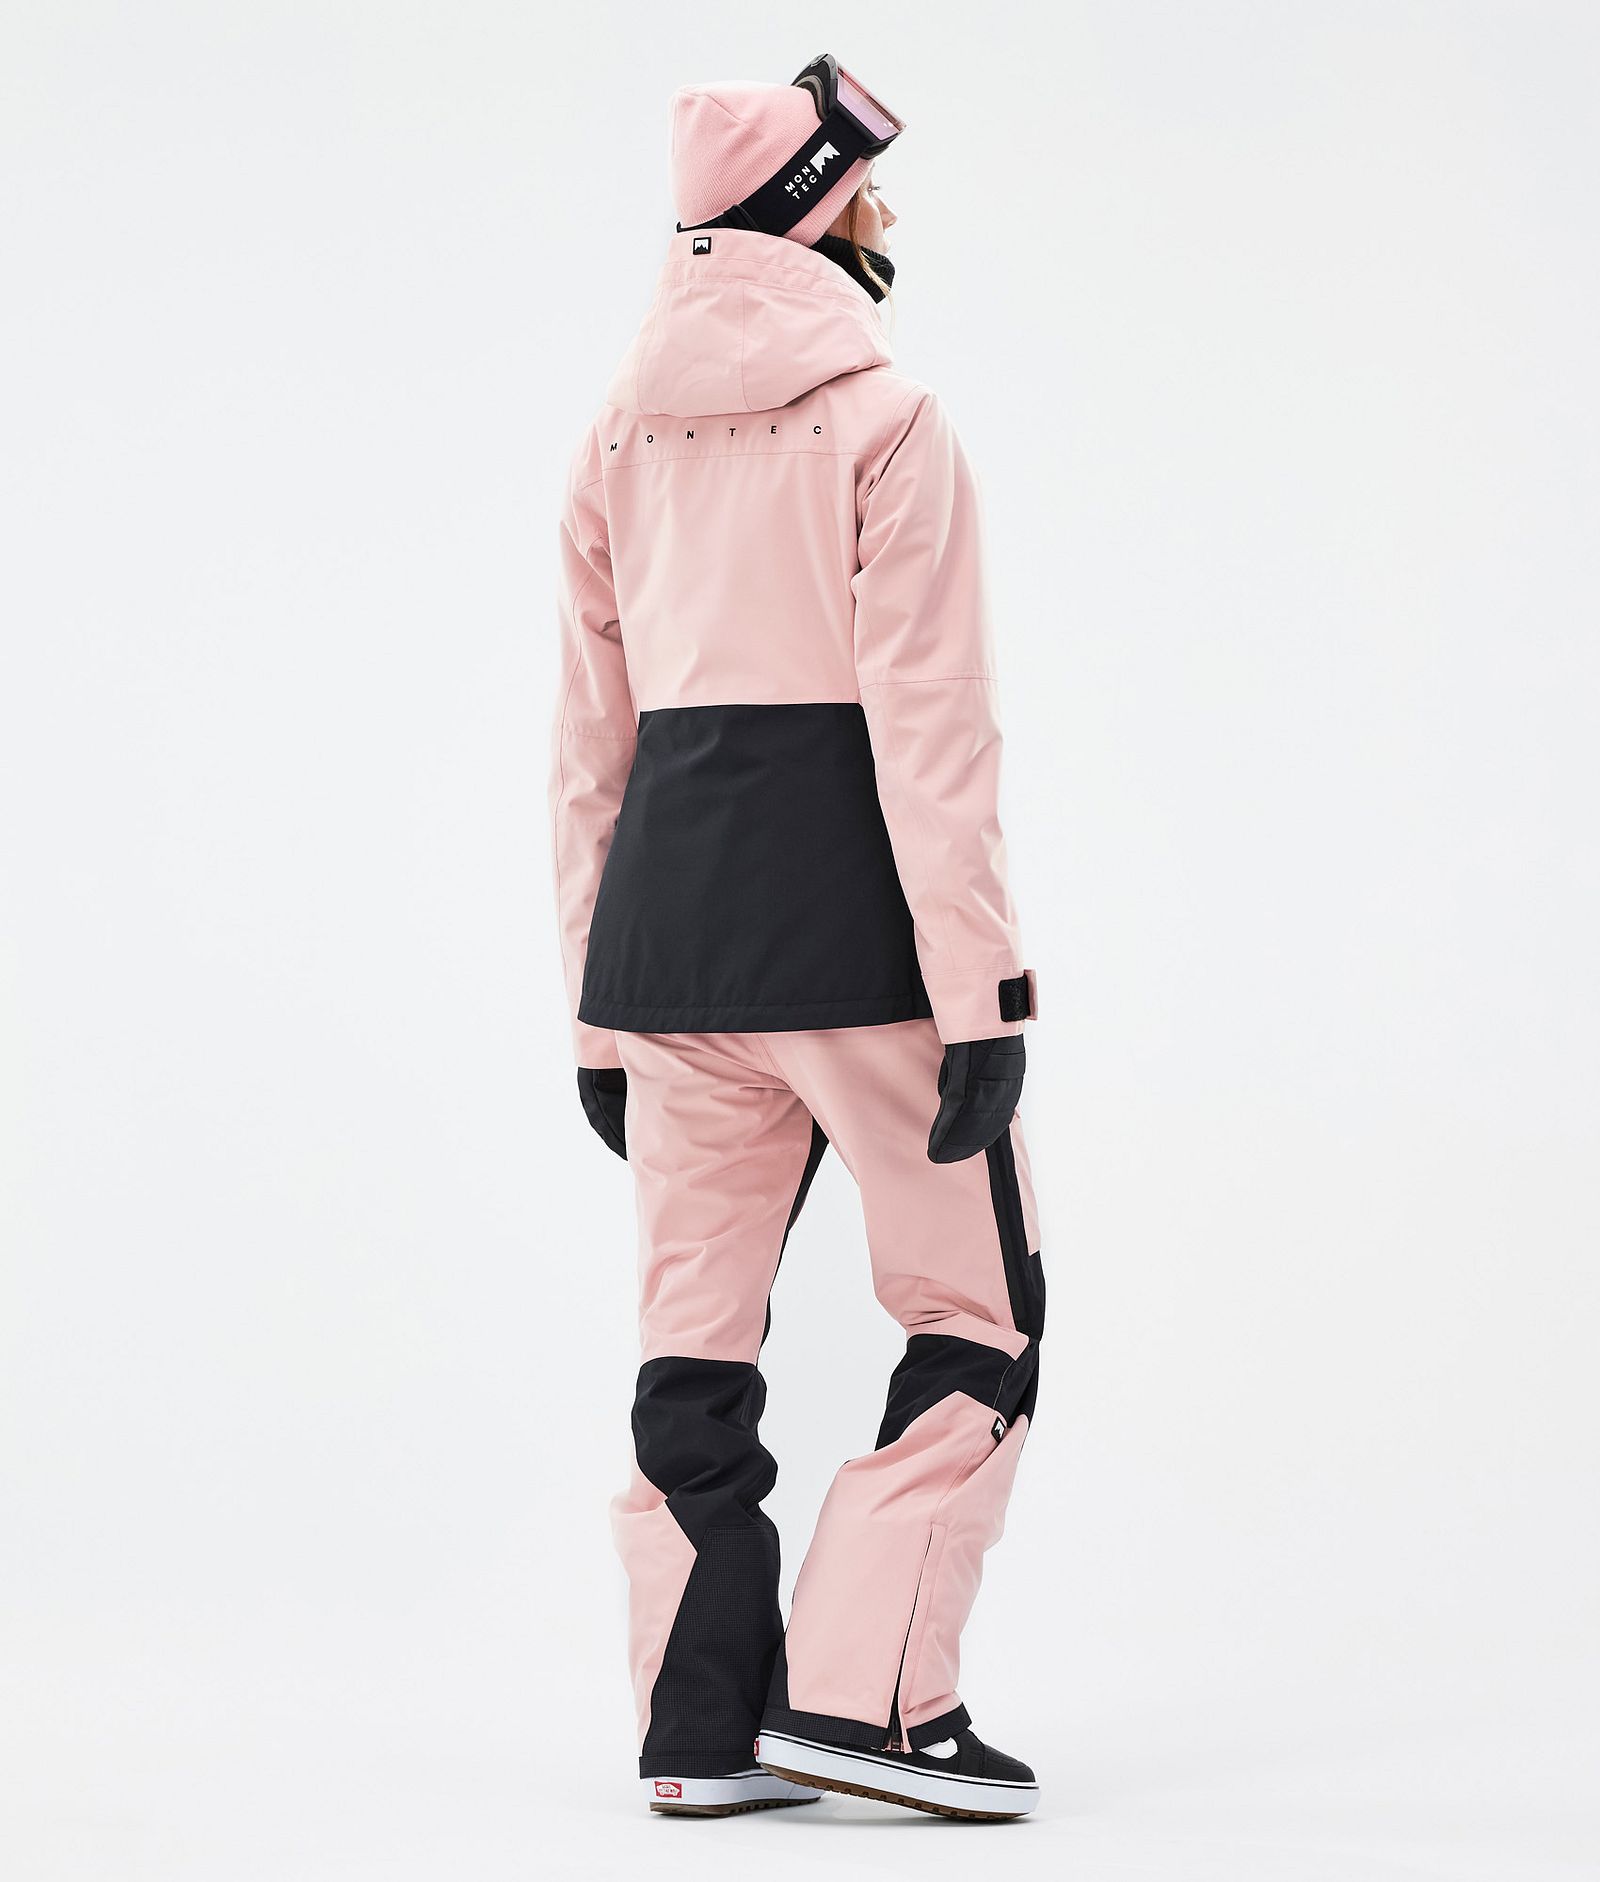 Moss W Snowboardjacke Damen Soft Pink/Black